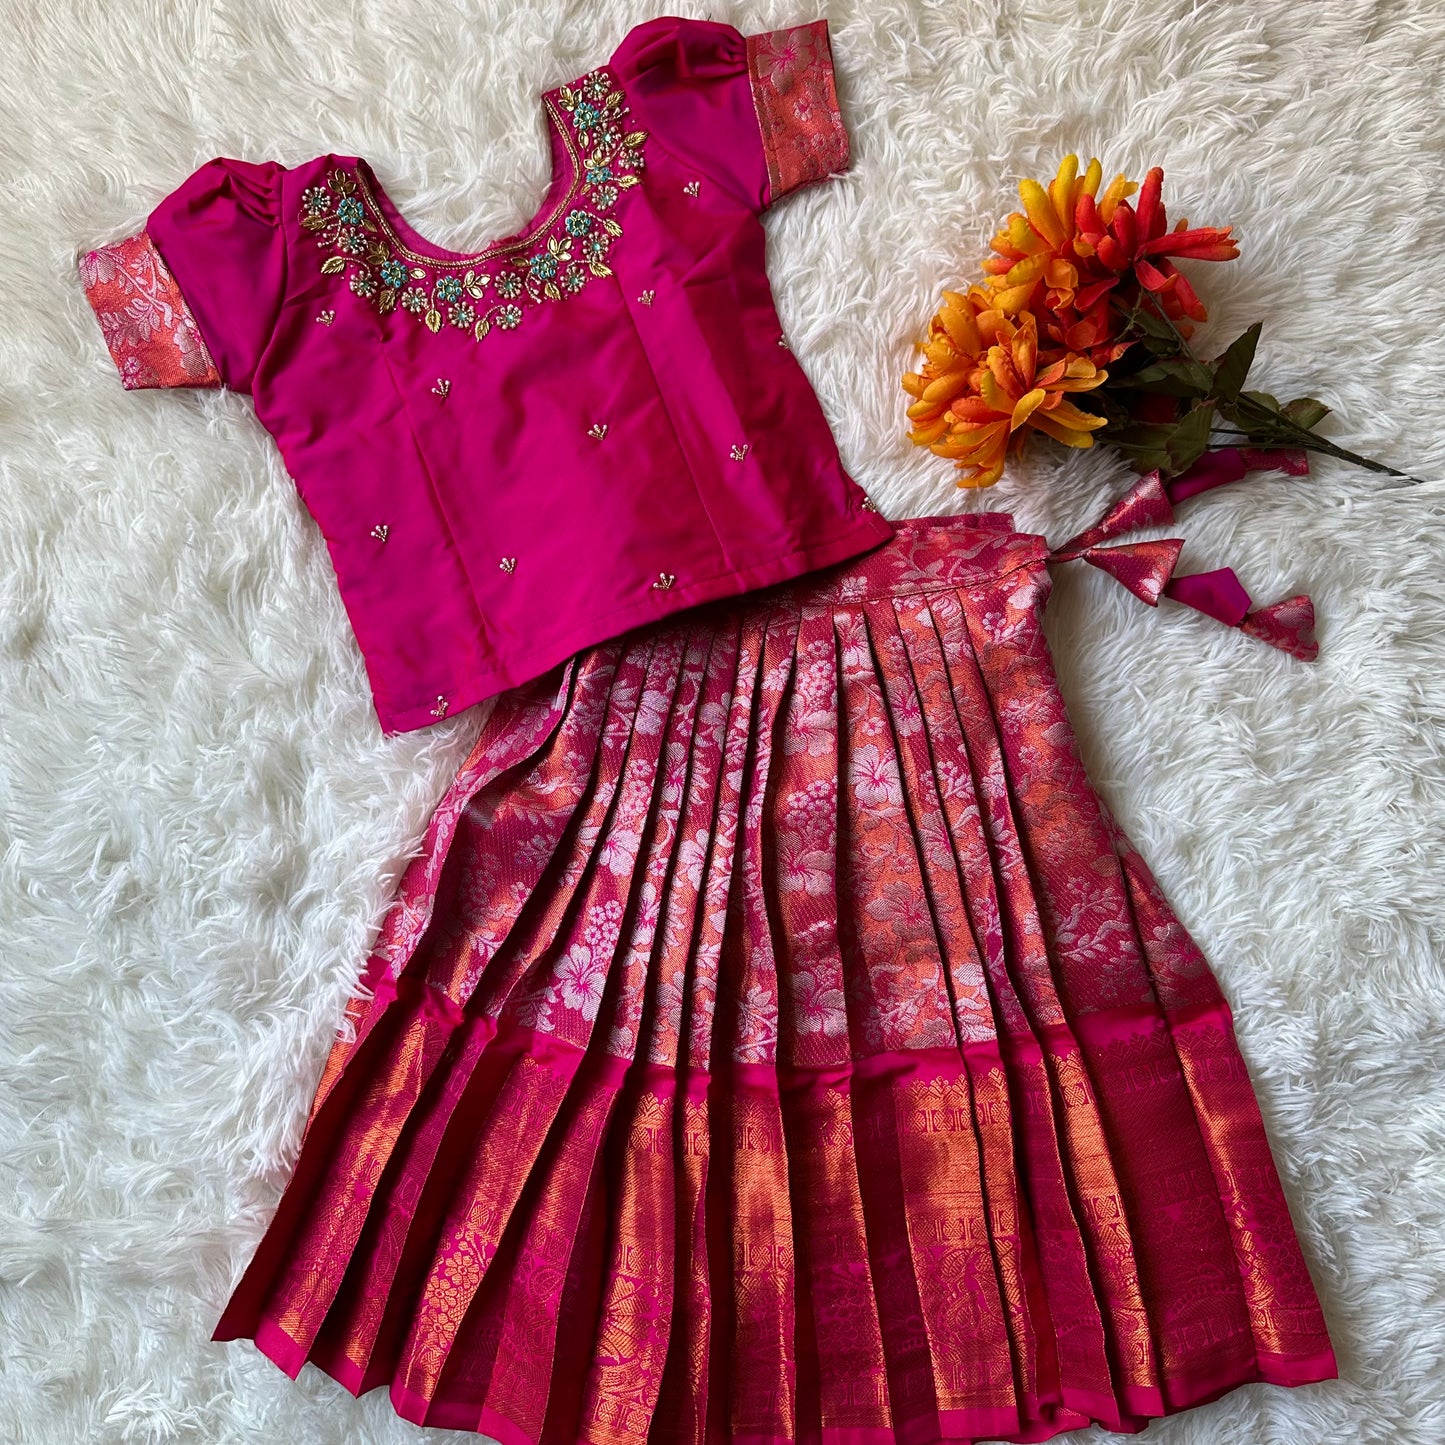 PRE ORDER - Radiant Elegance: Rani Pink Aari Work Top with Silver Zari Skirt